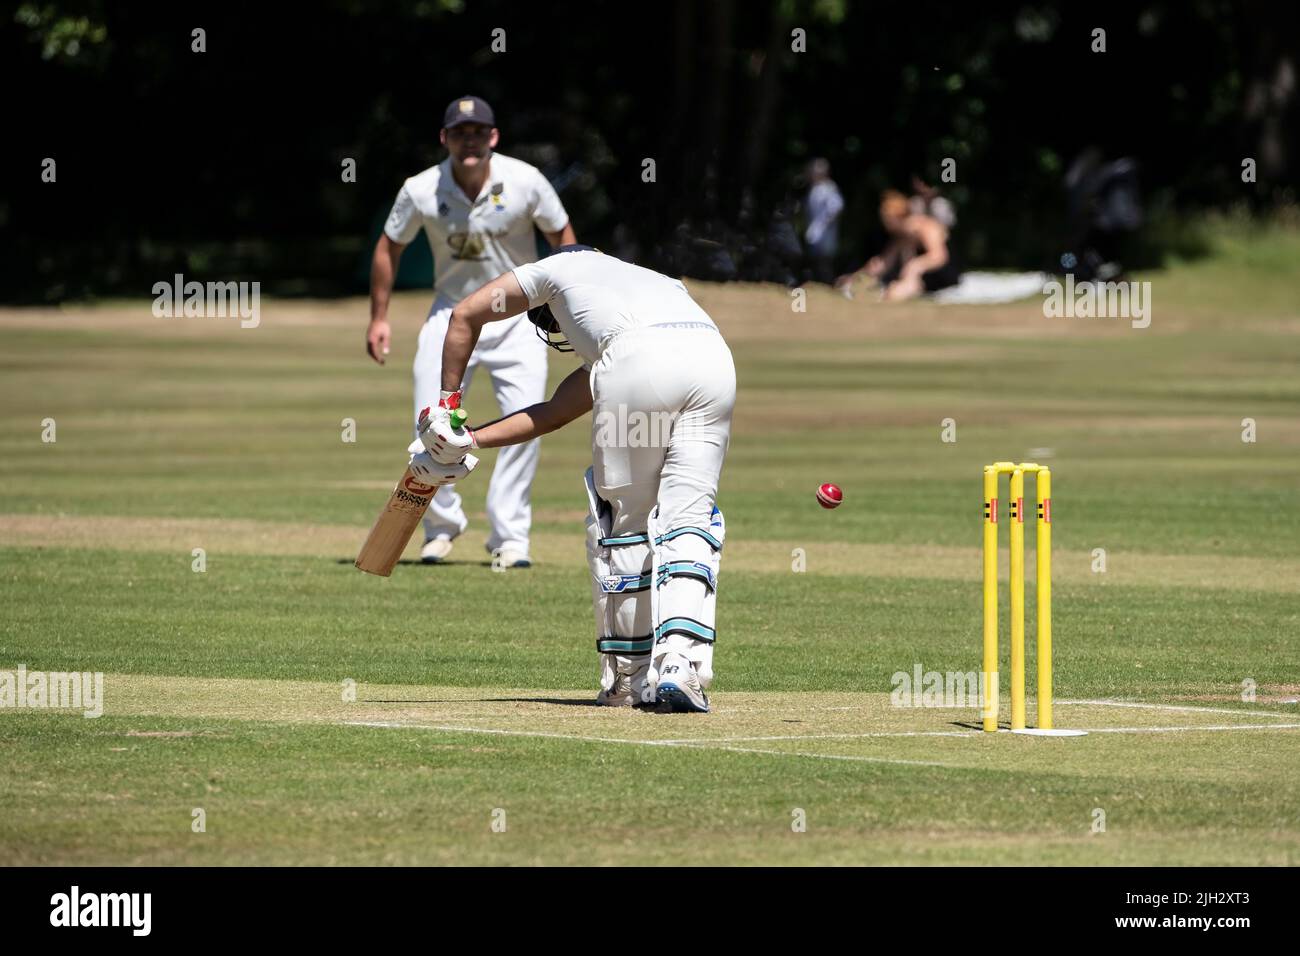 Le batteur dirige le ballon vers le côté de la jambe, sous la surveillance d'un proche batteur lors d'un match de cricket dans un village à Huddersfield, dans le Yorkshire, en Angleterre Banque D'Images